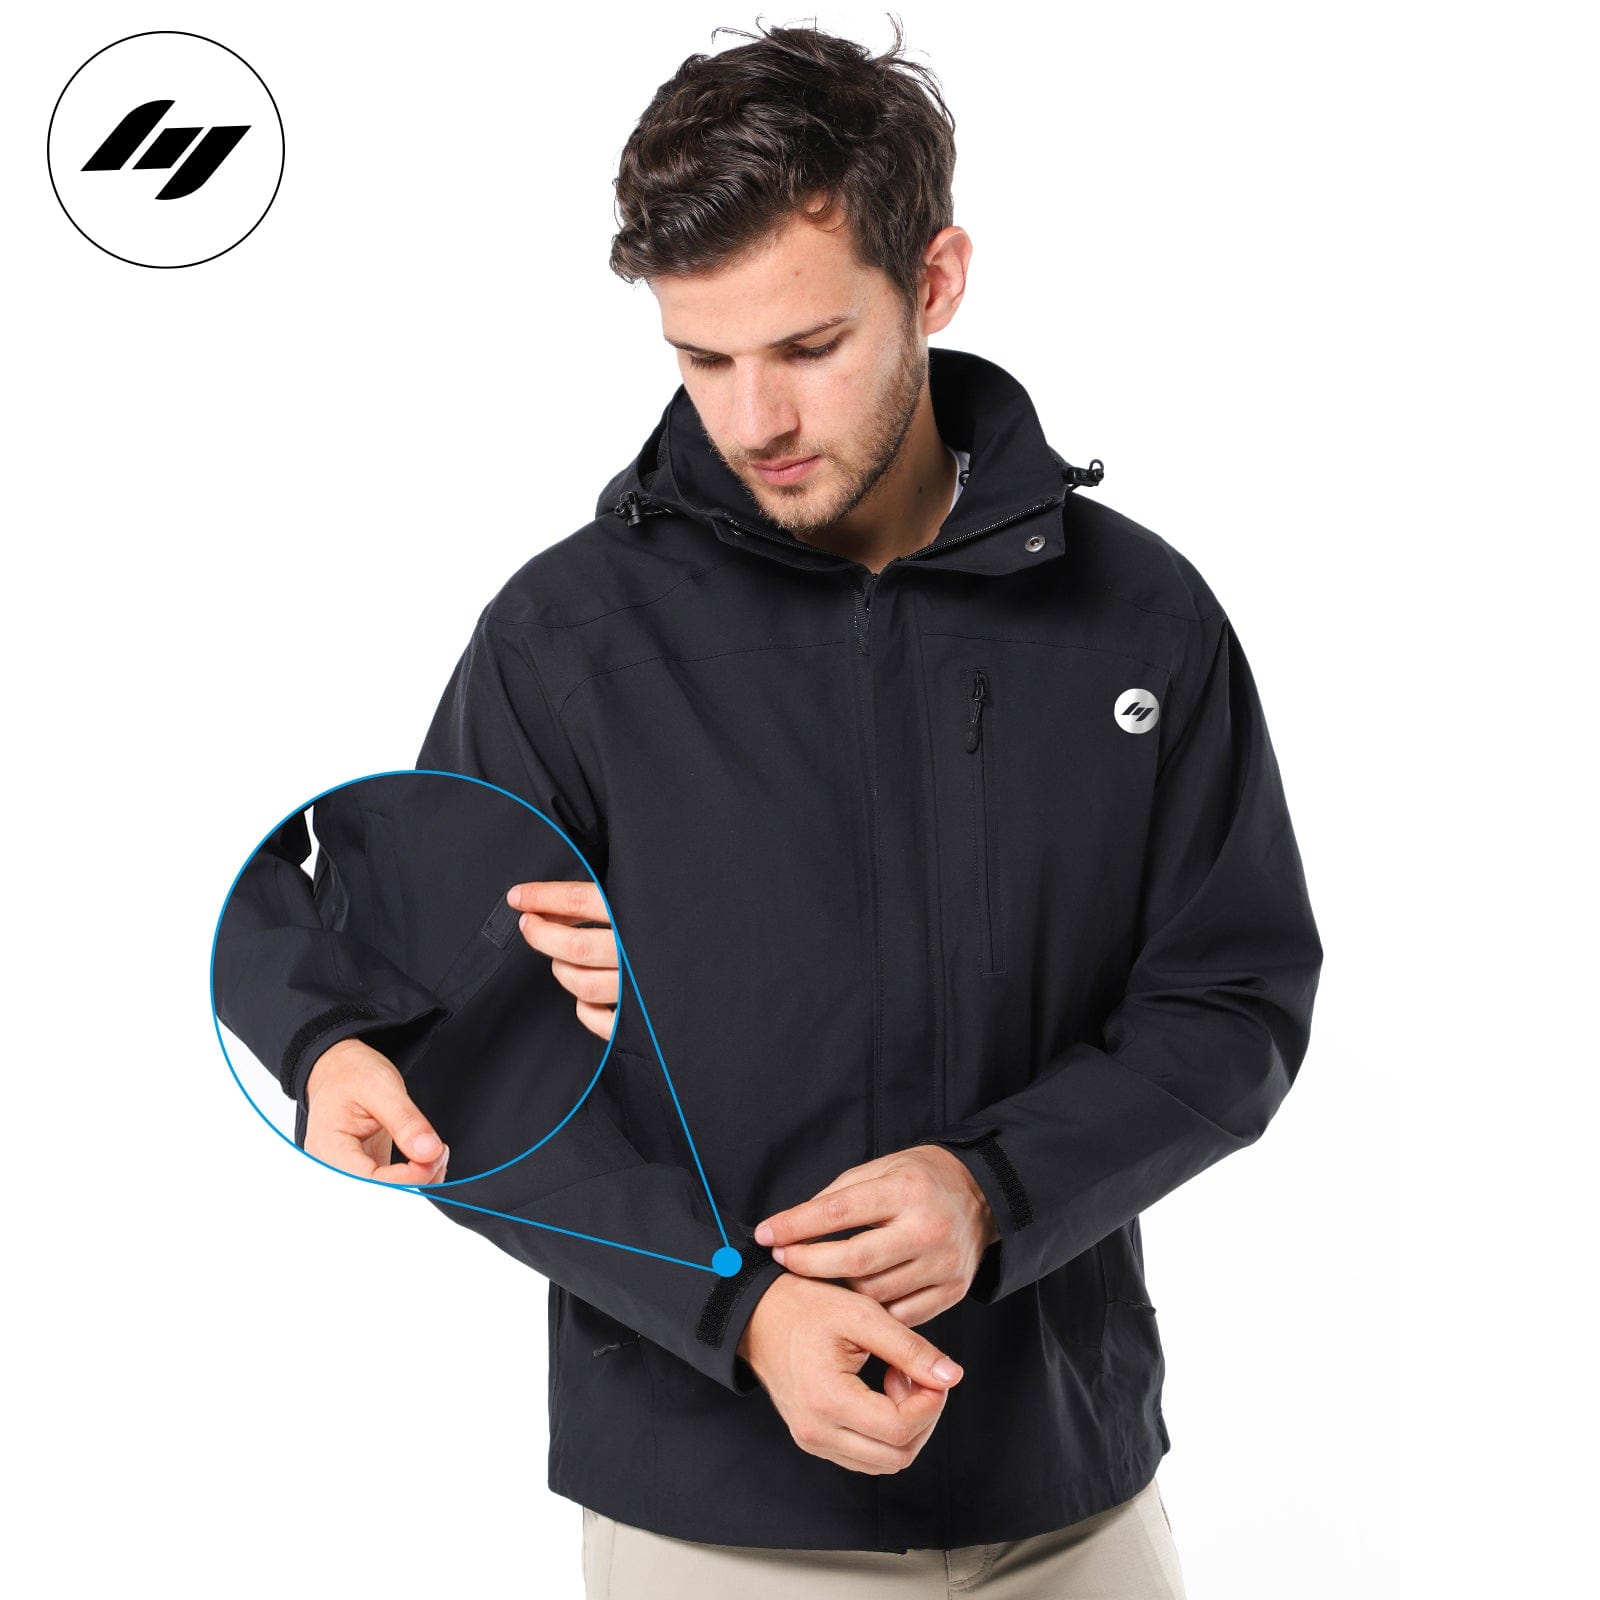 Men's Lightweight Waterproof Windproof Rain Jacket with YKK zippers jackets Mier Sports